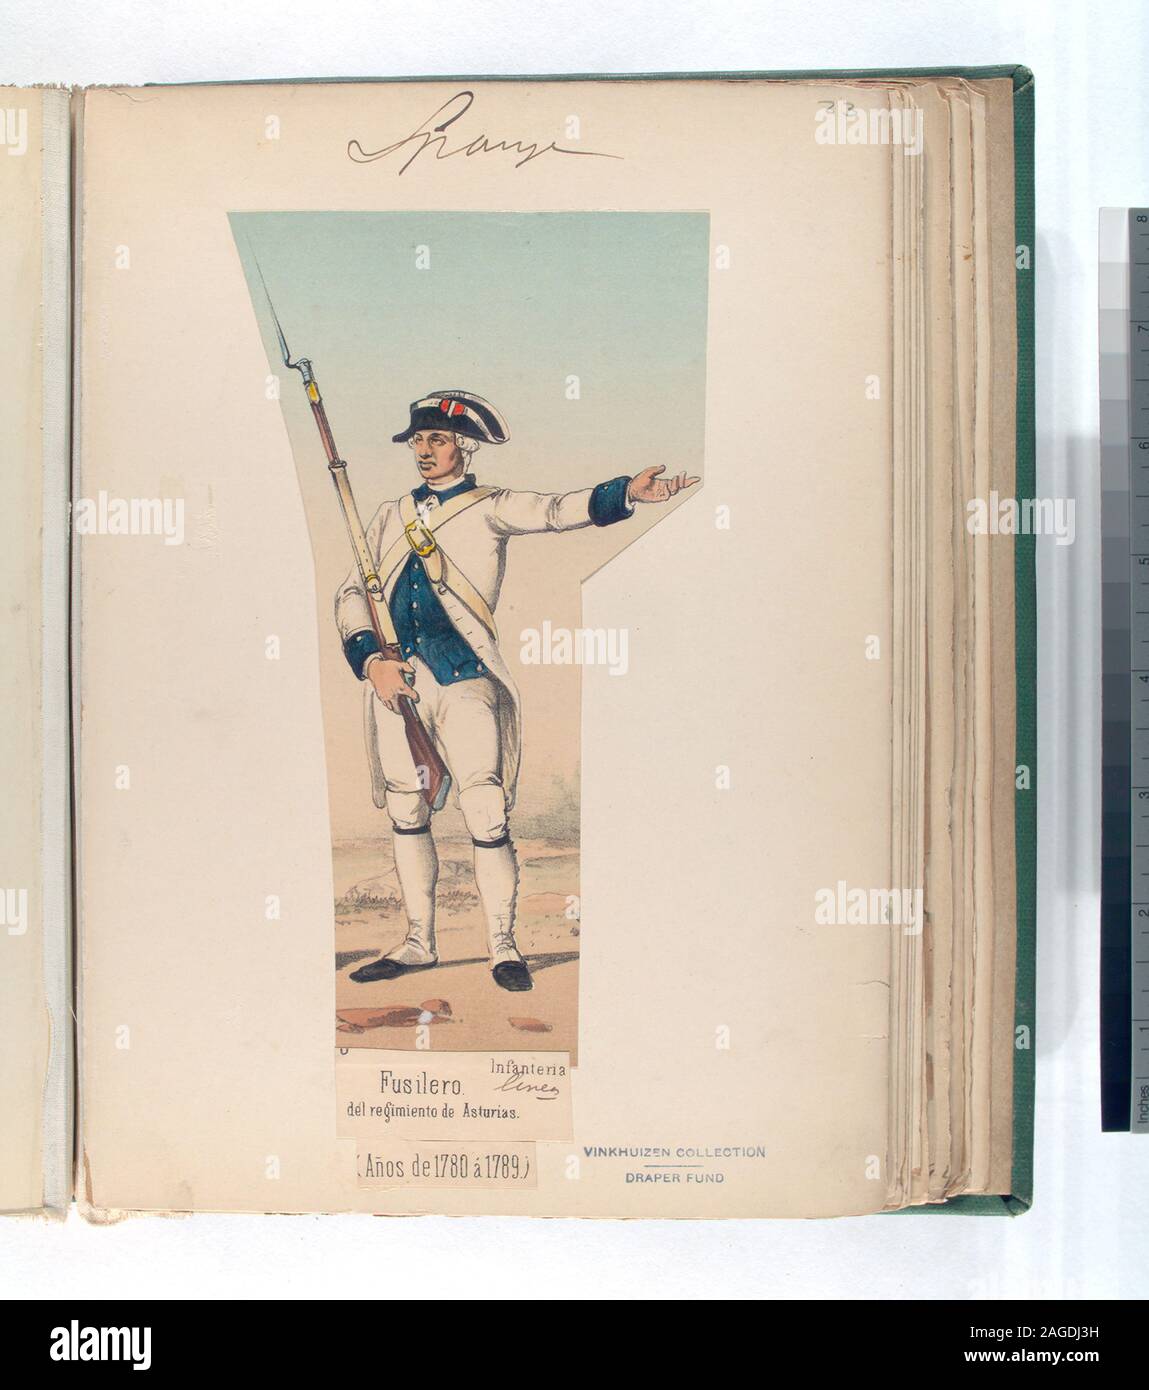 Draper Fund; Infanteria de linea. Fusilero, del regimiento de Asturias.  (Años de 1780 á 1789). Stock Photo